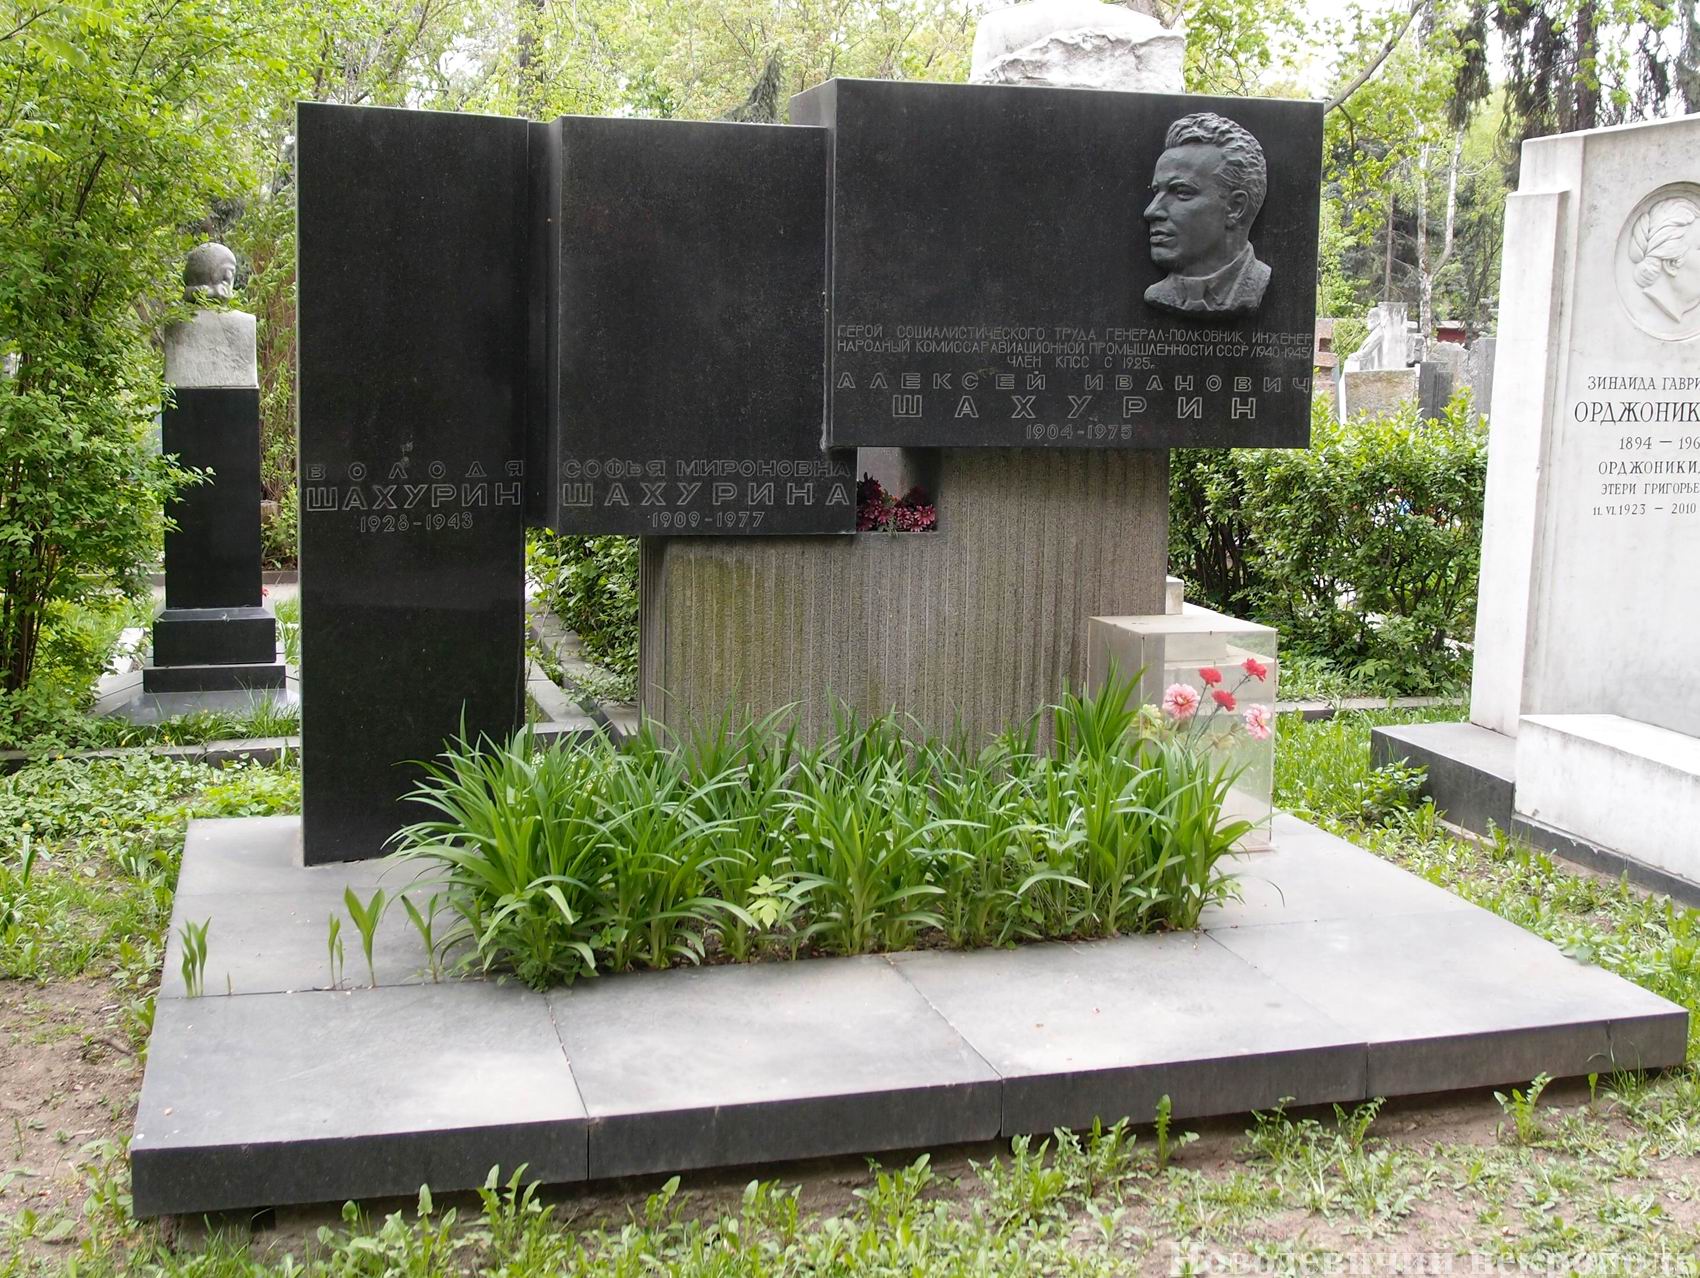 Памятник на могиле Шахурина А.И. (1904-1975), ск. М.Сальман, арх. И.Студеникин, на Новодевичьем кладбище (1-43-25).